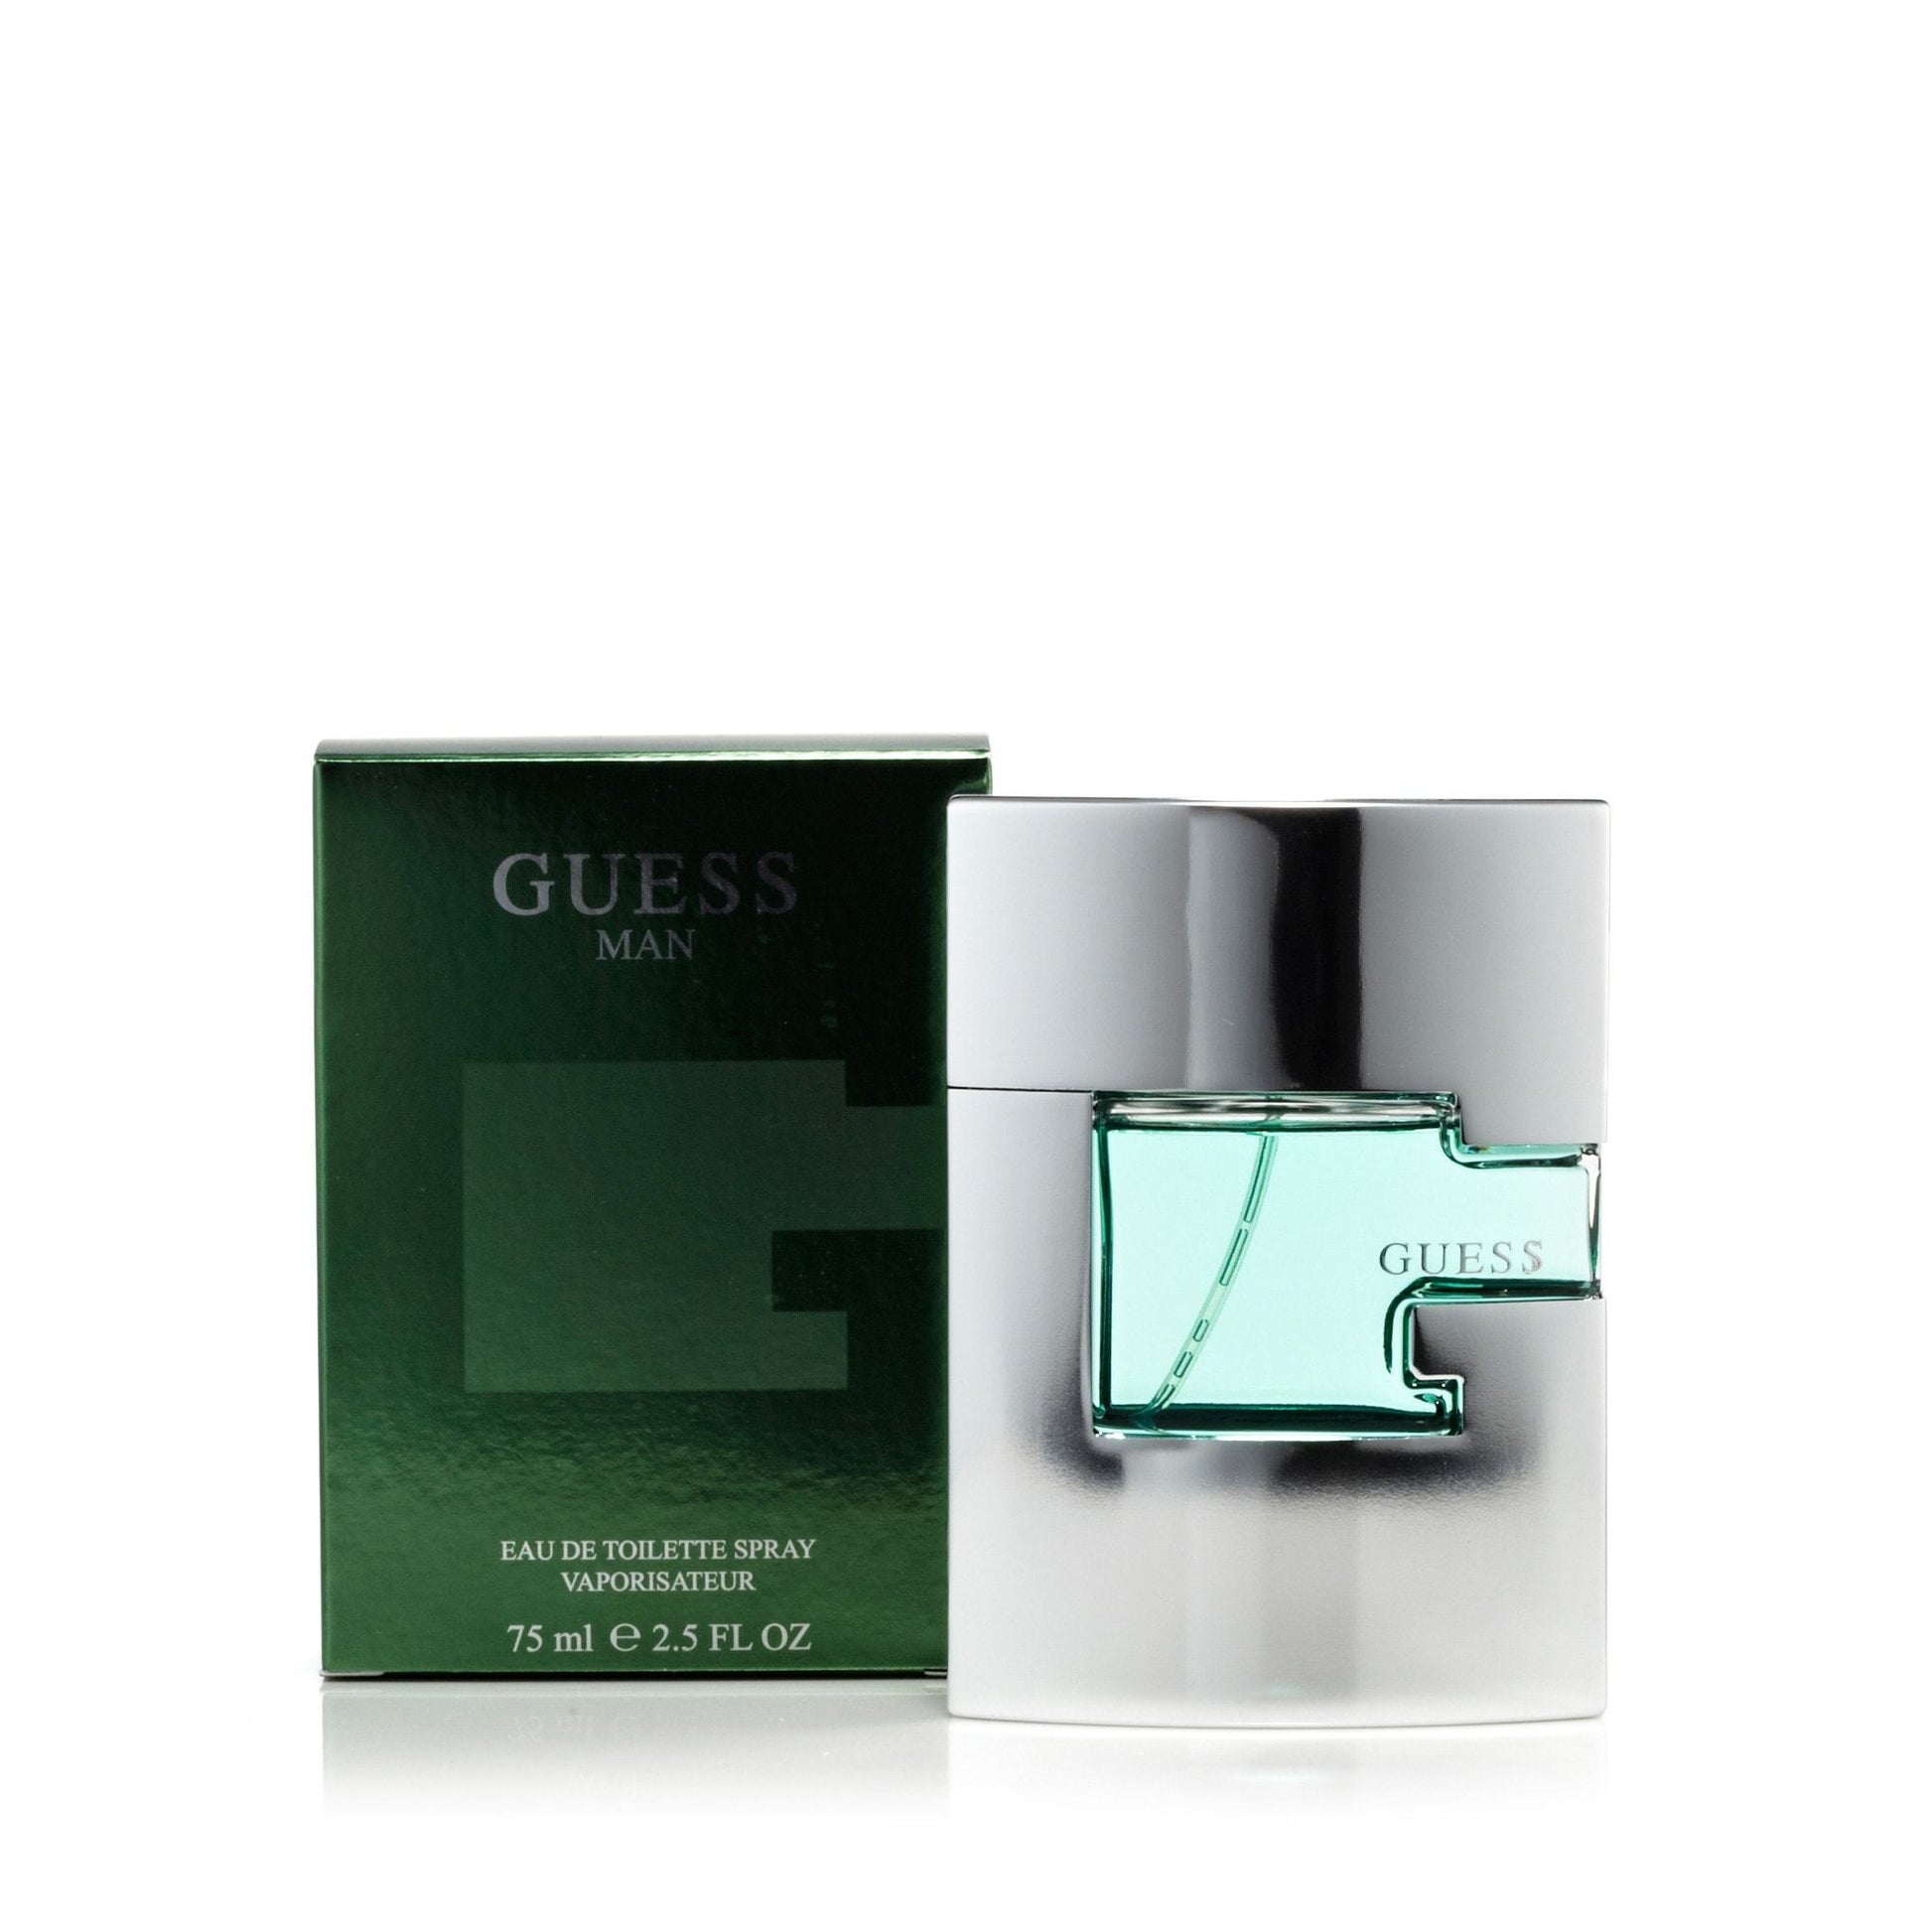 Guess Eau de Toilette Spray for Men by Guess, Product image 4